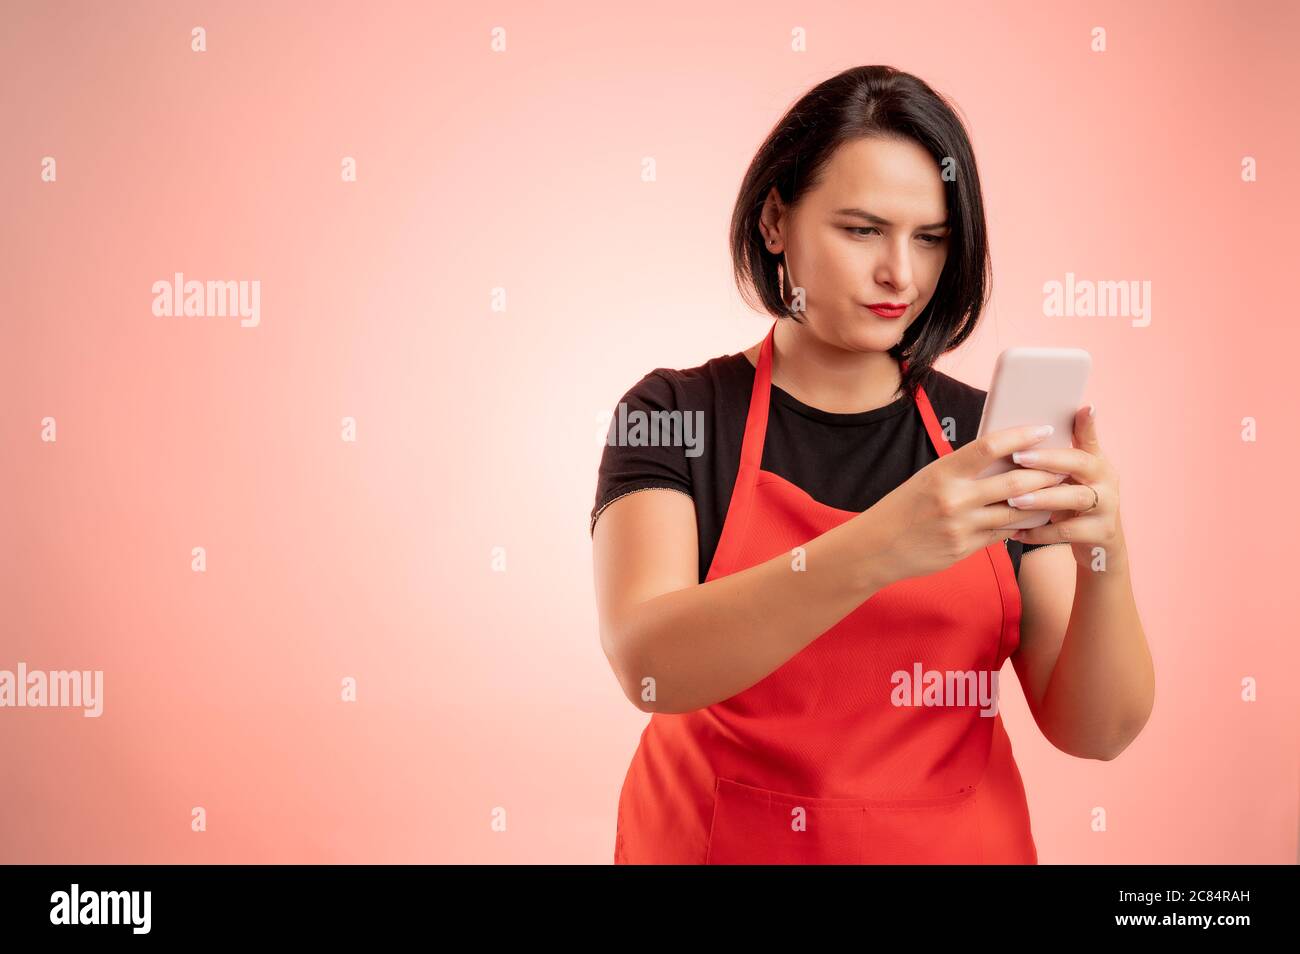 Frau im Supermarkt mit roter Schürze und schwarzem T-Shirt beschäftigt, hält Smartphone, SMS, nervös isoliert auf rotem Hintergrund Stockfoto